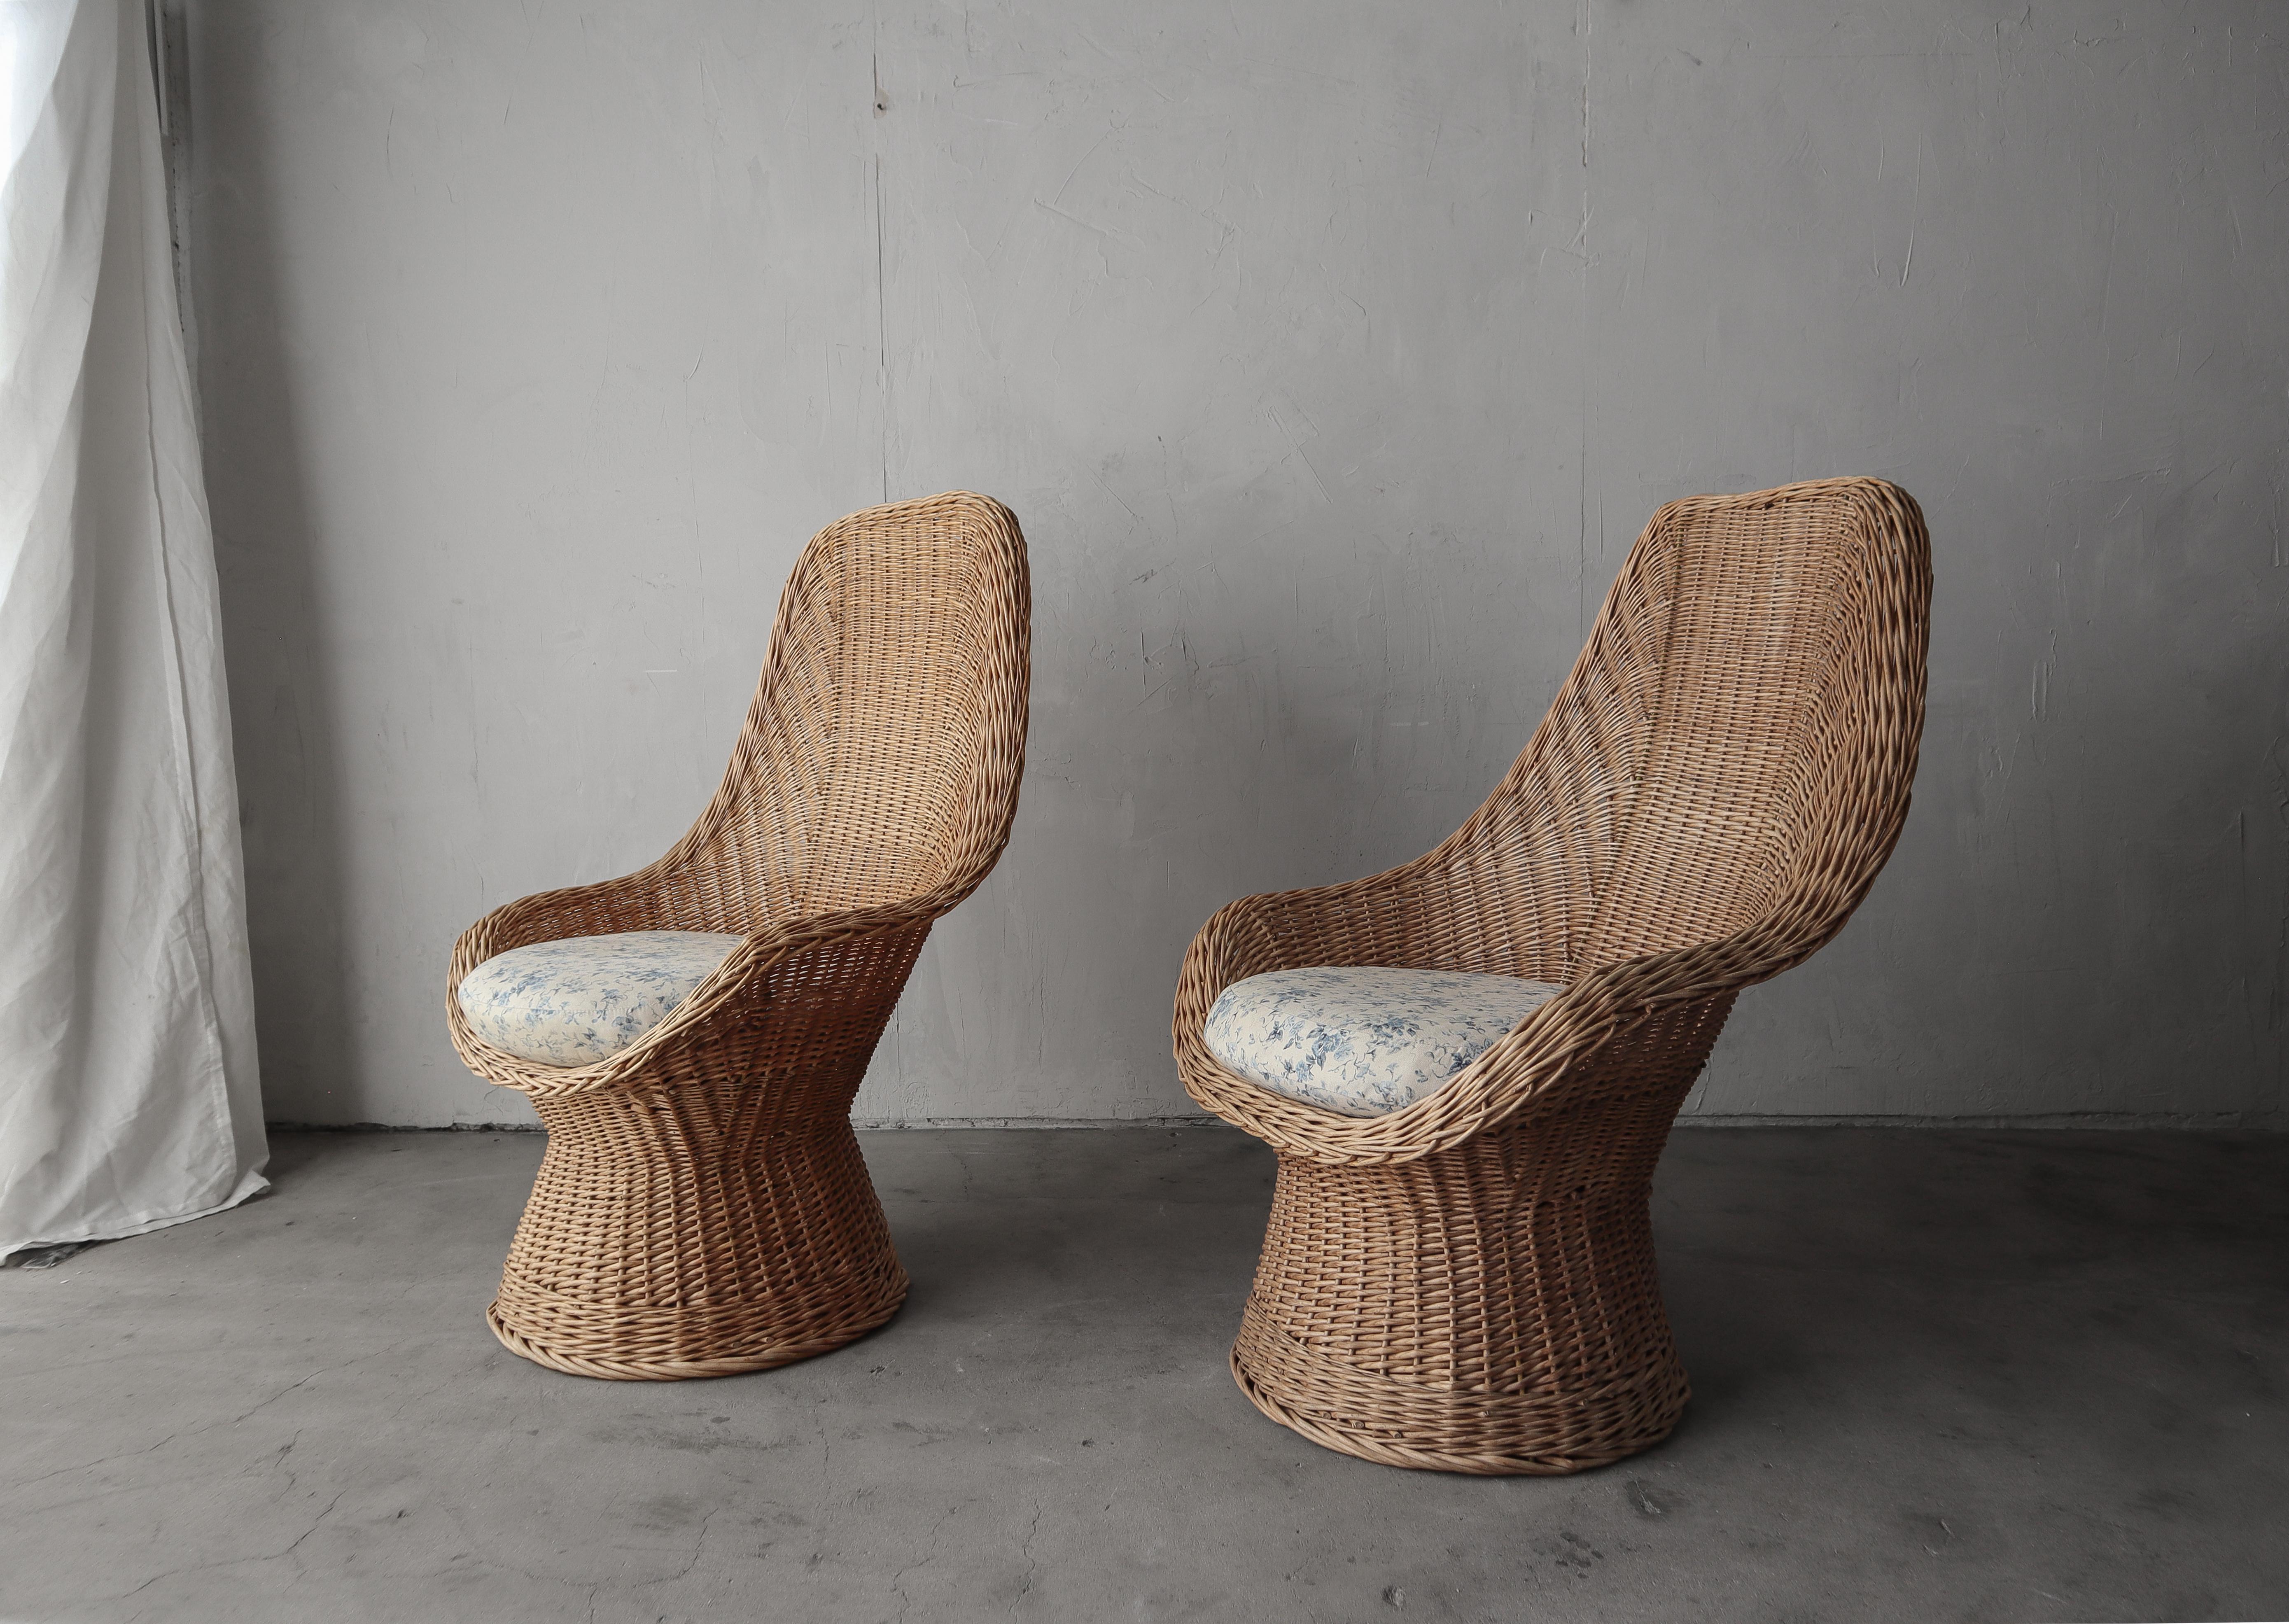 Ausgezeichnetes Paar polnischer Sessel aus Korbgeflecht aus den 1970er Jahren.

Die Stühle sind in einem ausgezeichneten Vintage-Zustand ohne tatsächliche Schäden.  Der Stoff der Sitzkissen ist brauchbar, aber es wäre schön, sie neu zu beziehen.



